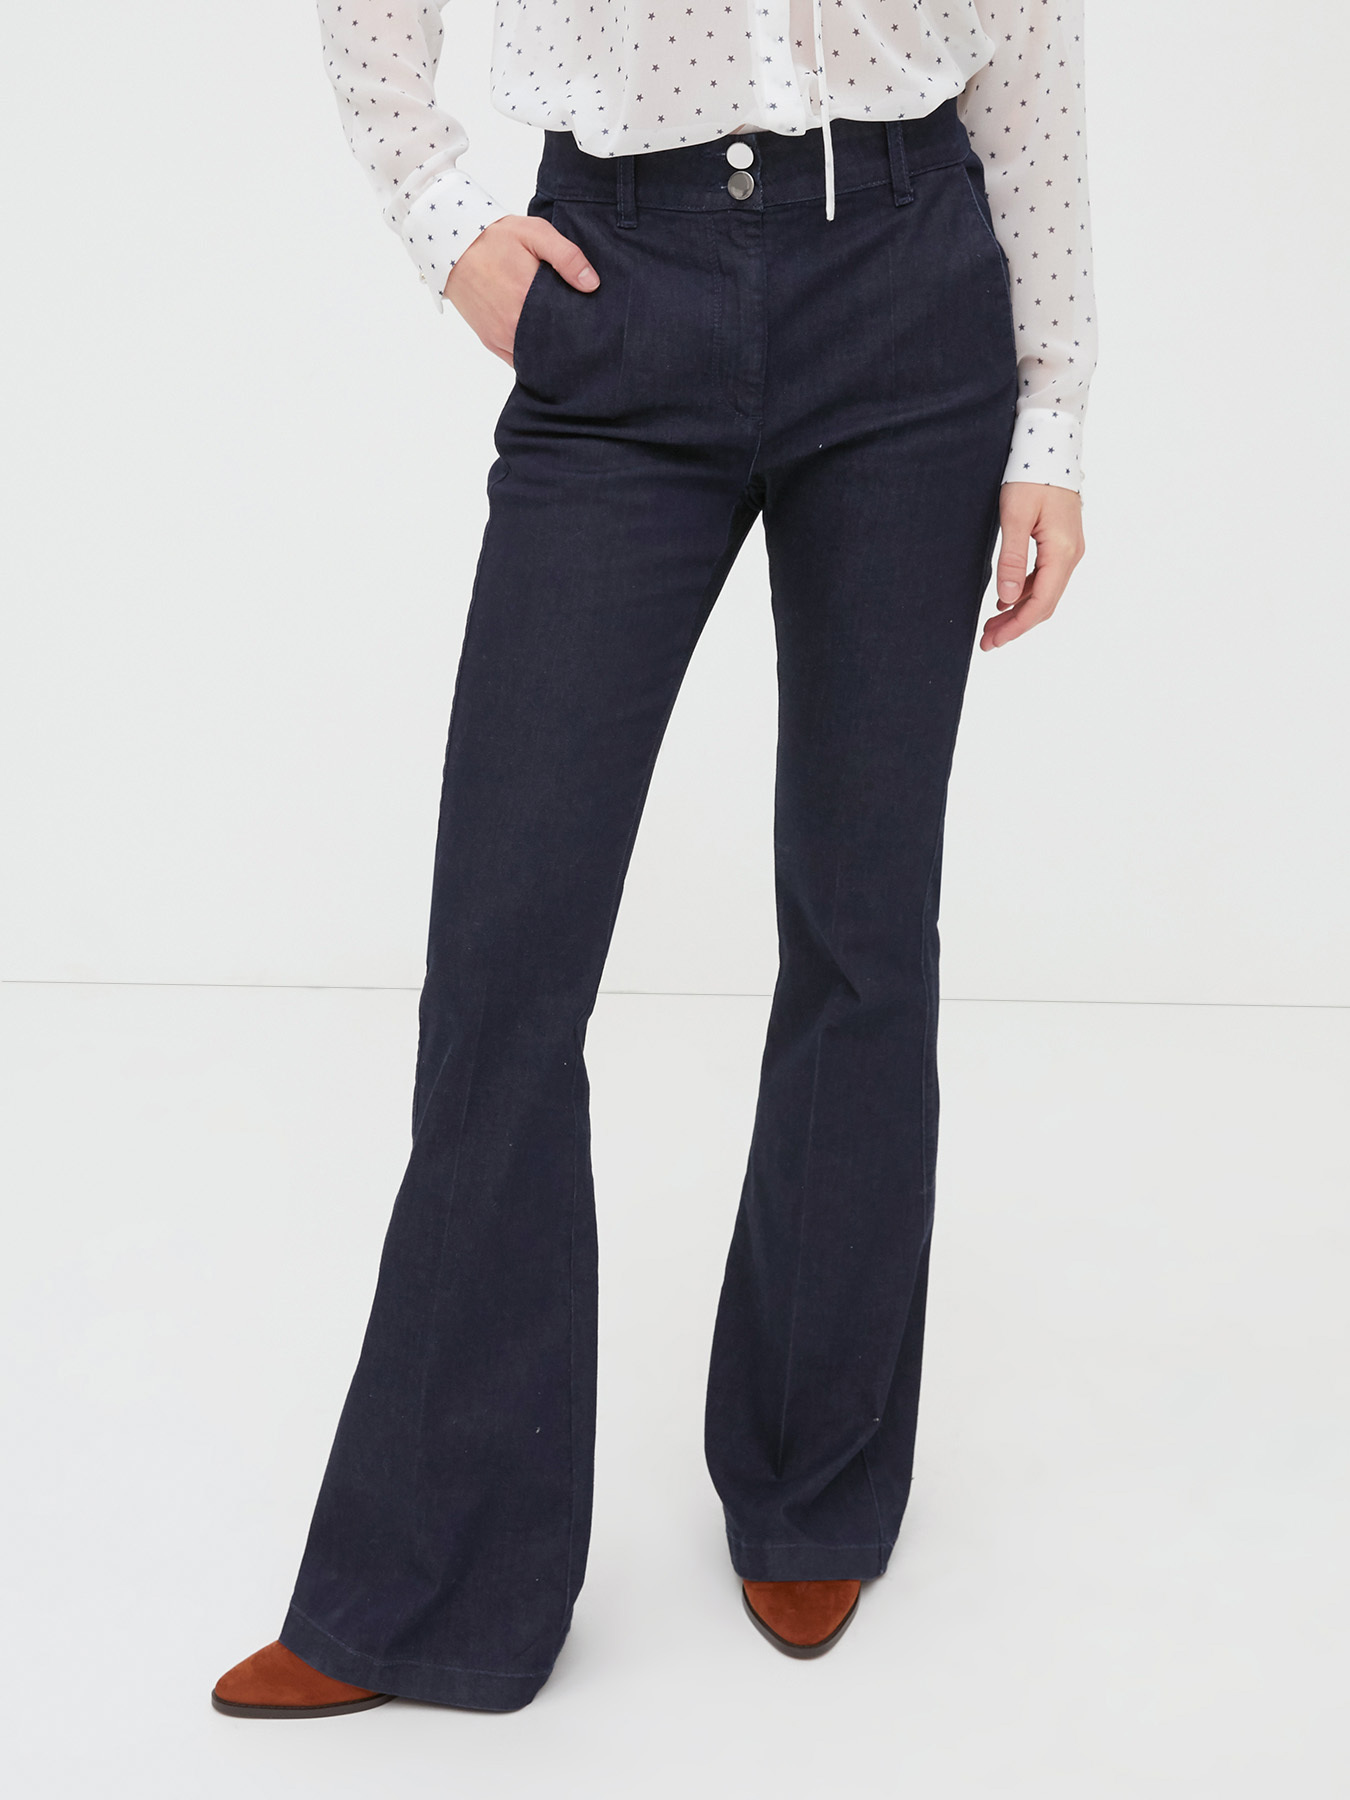 Elle model flared jeans - Motivi.com - RO